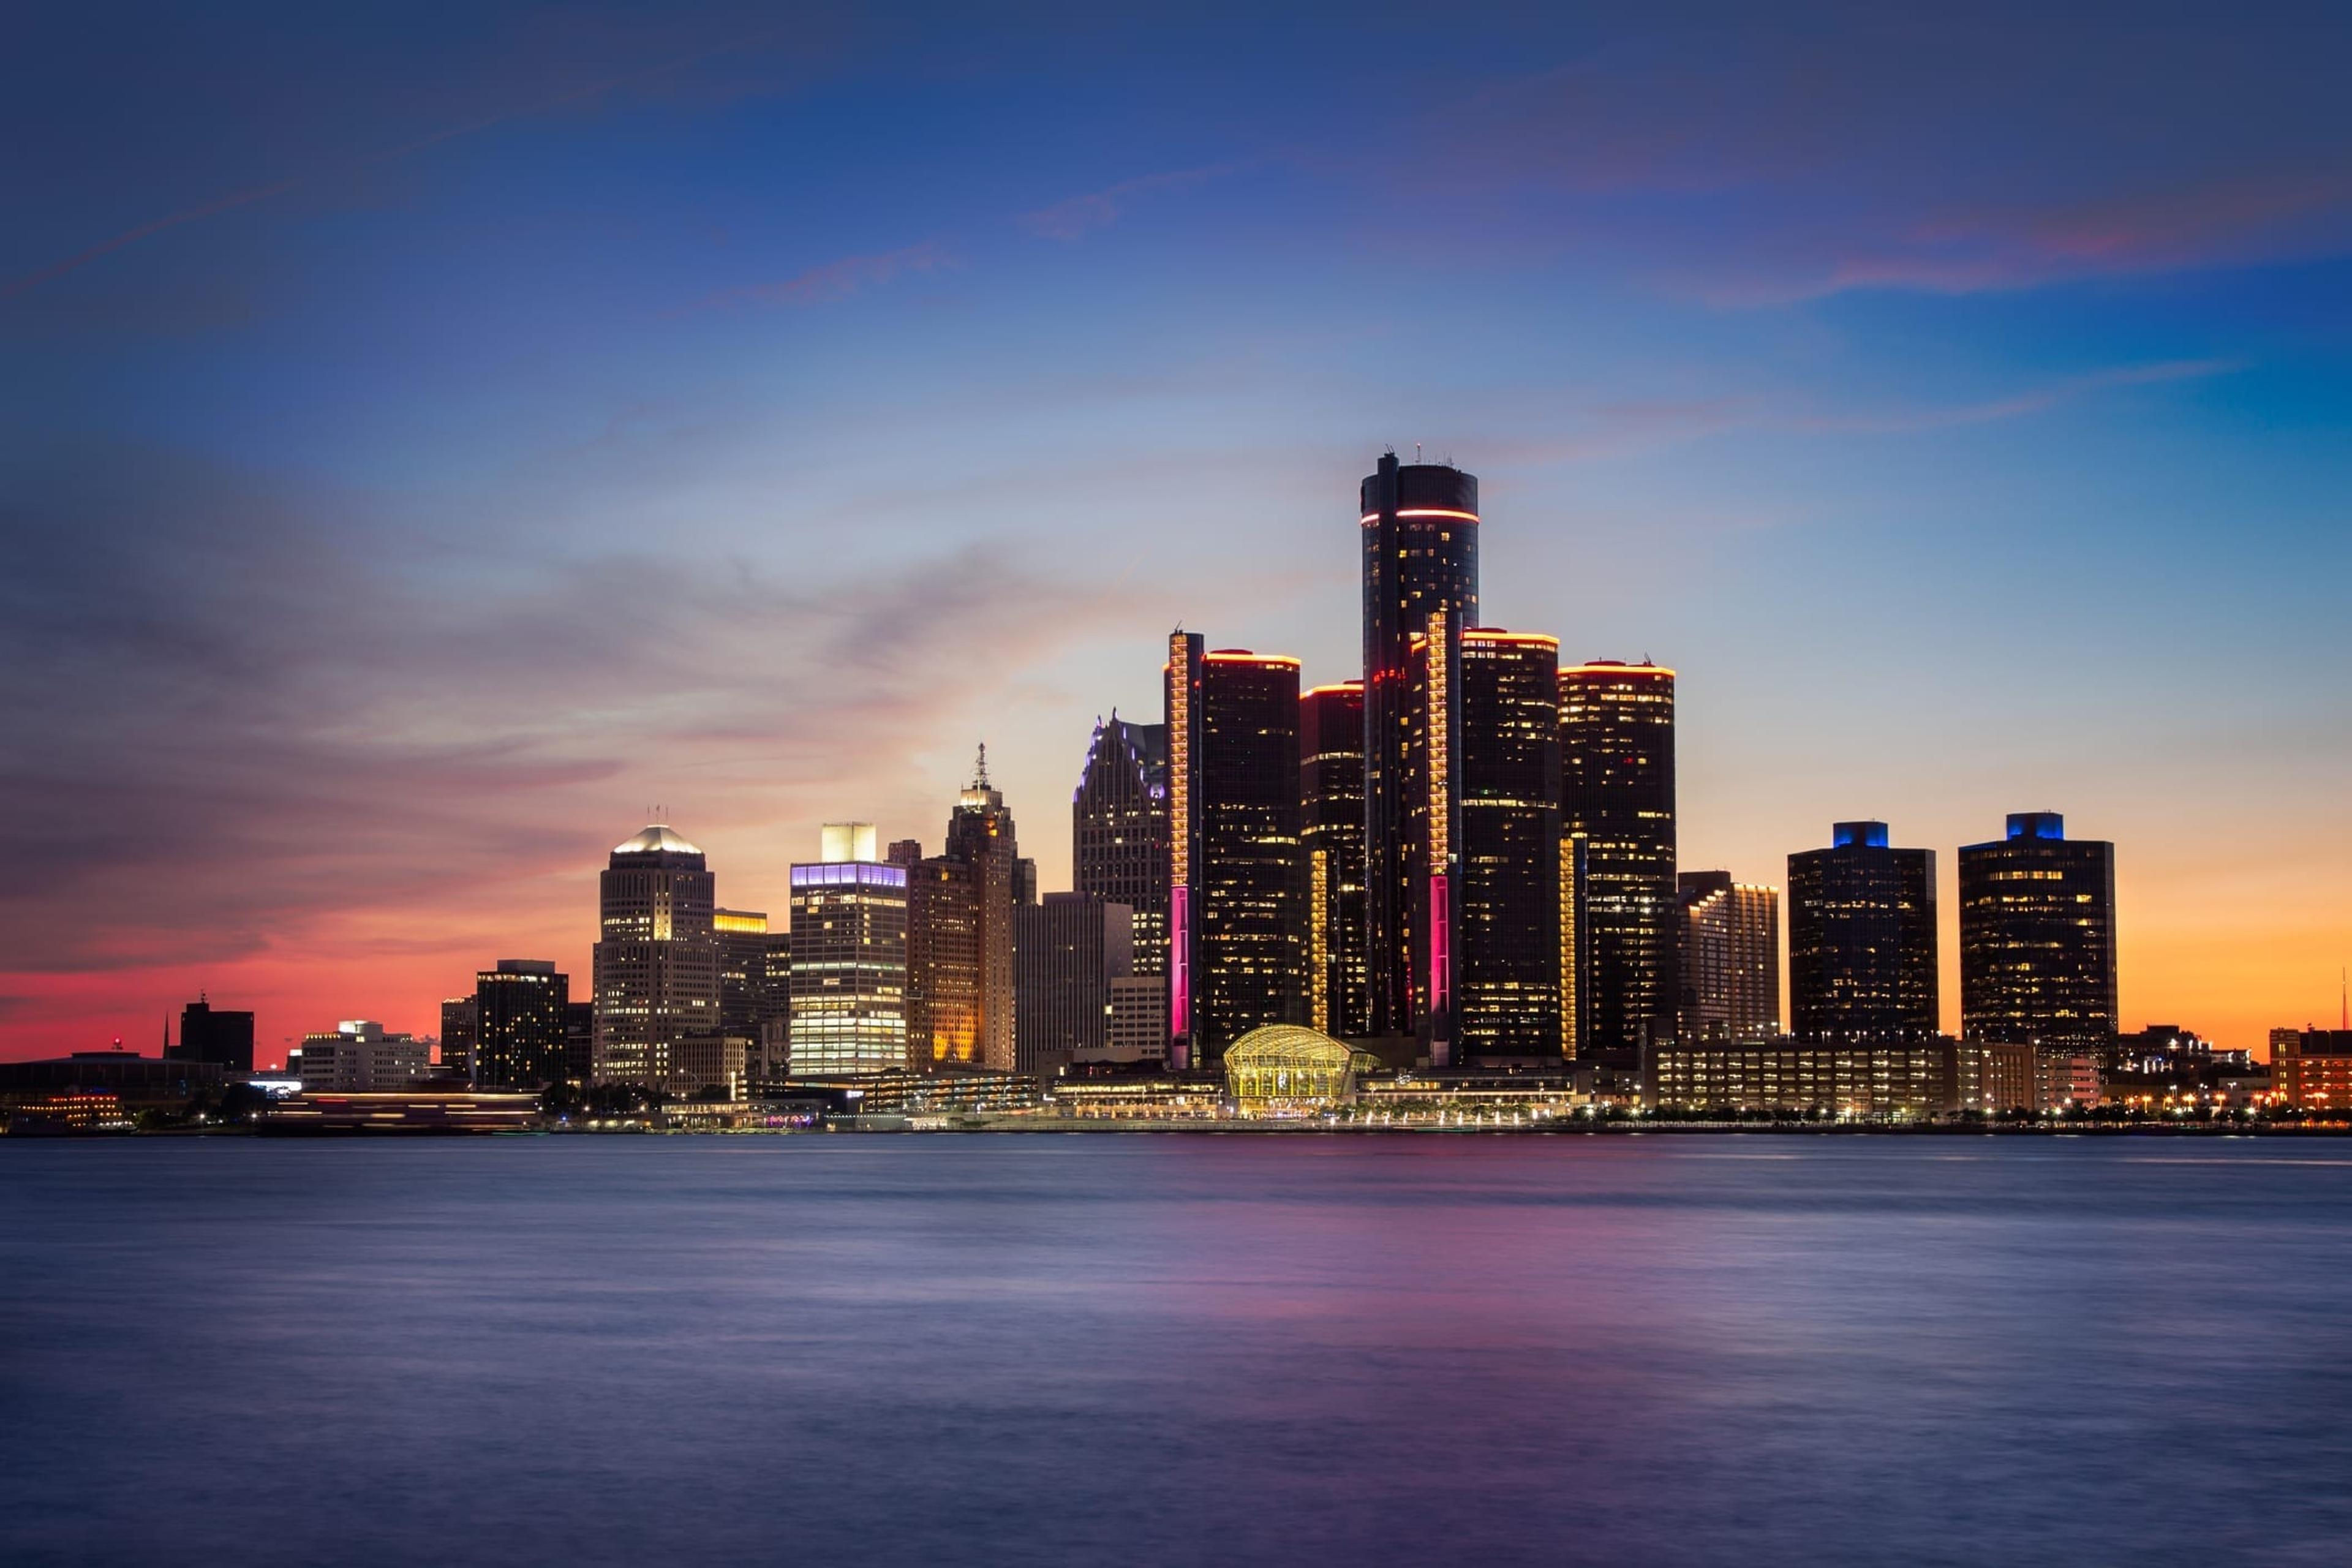 Detroit skyline at dusk